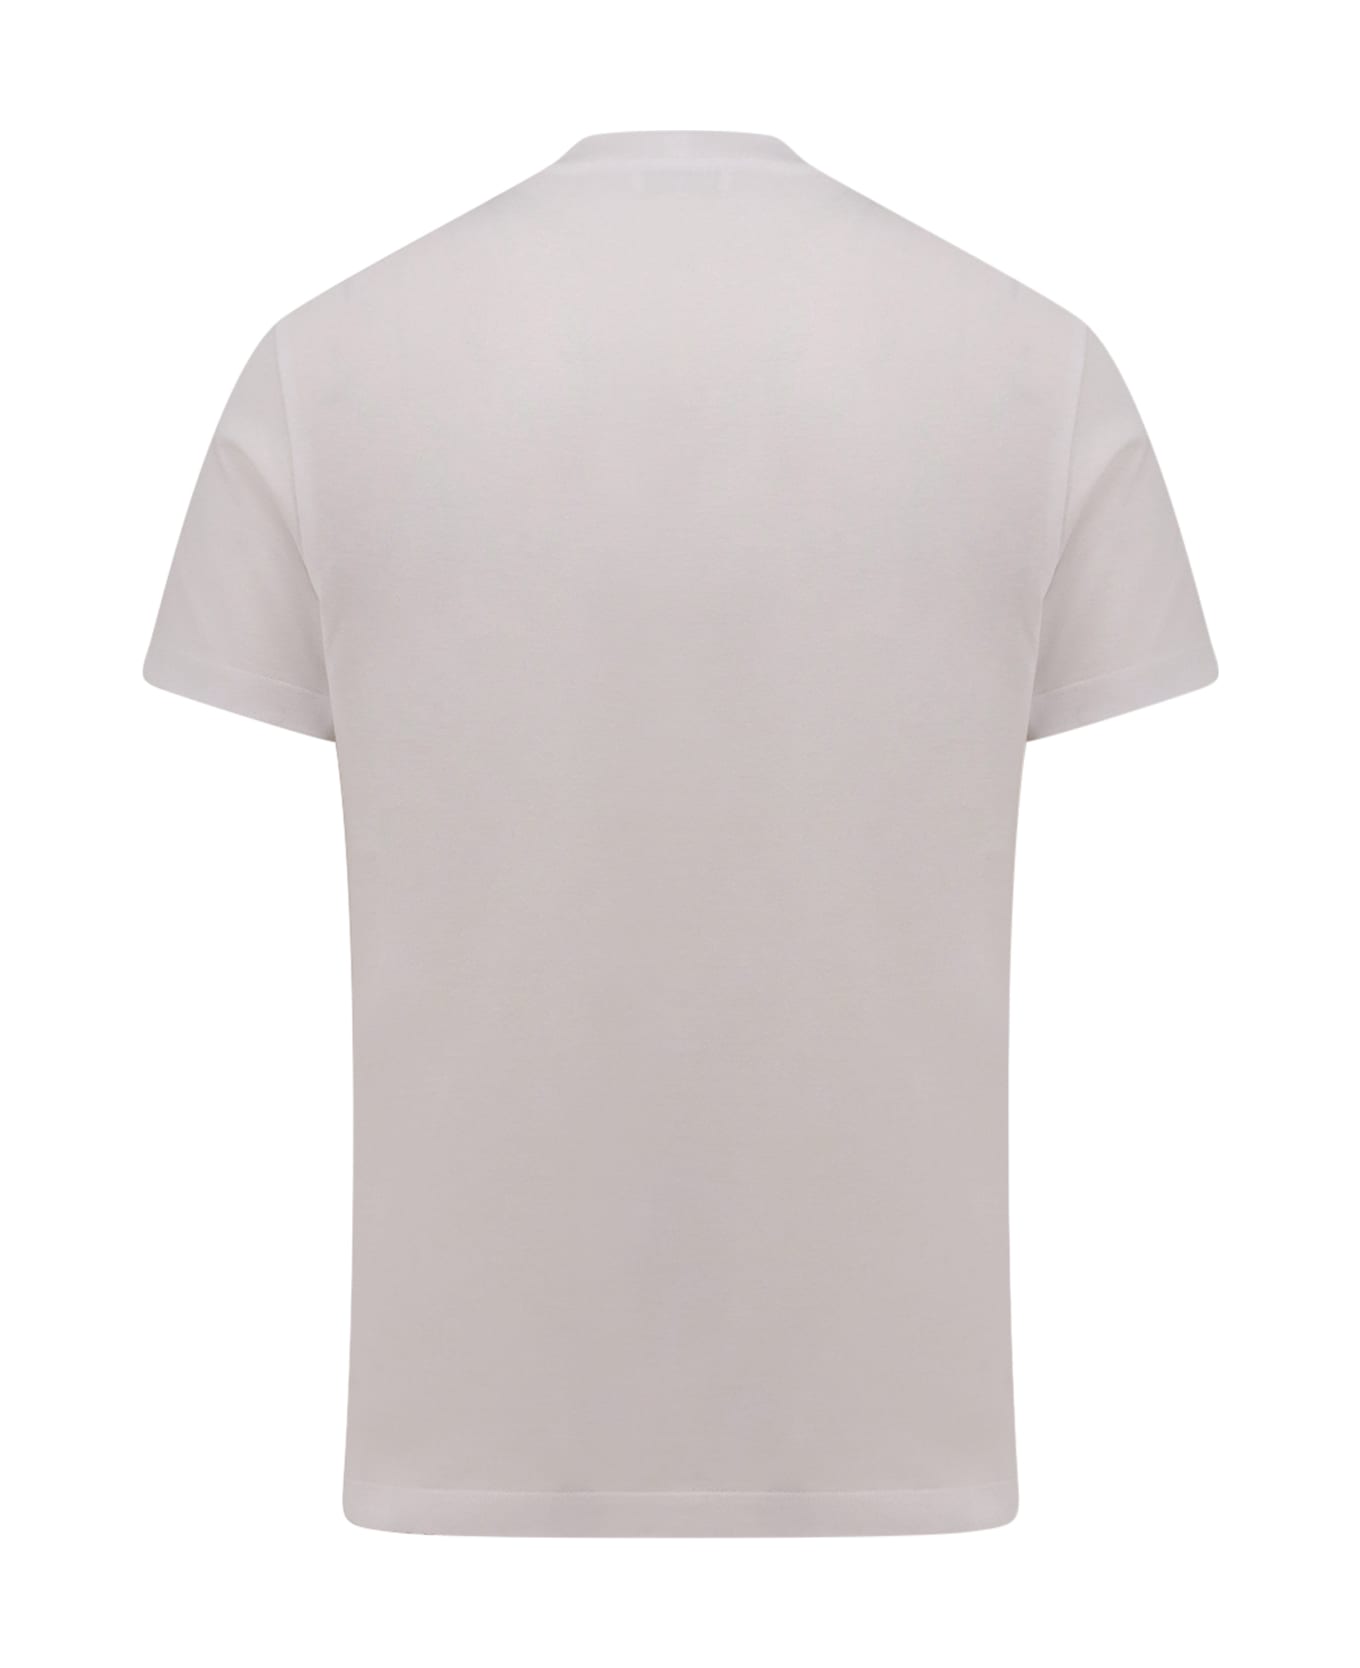 Ferragamo T-shirt - White